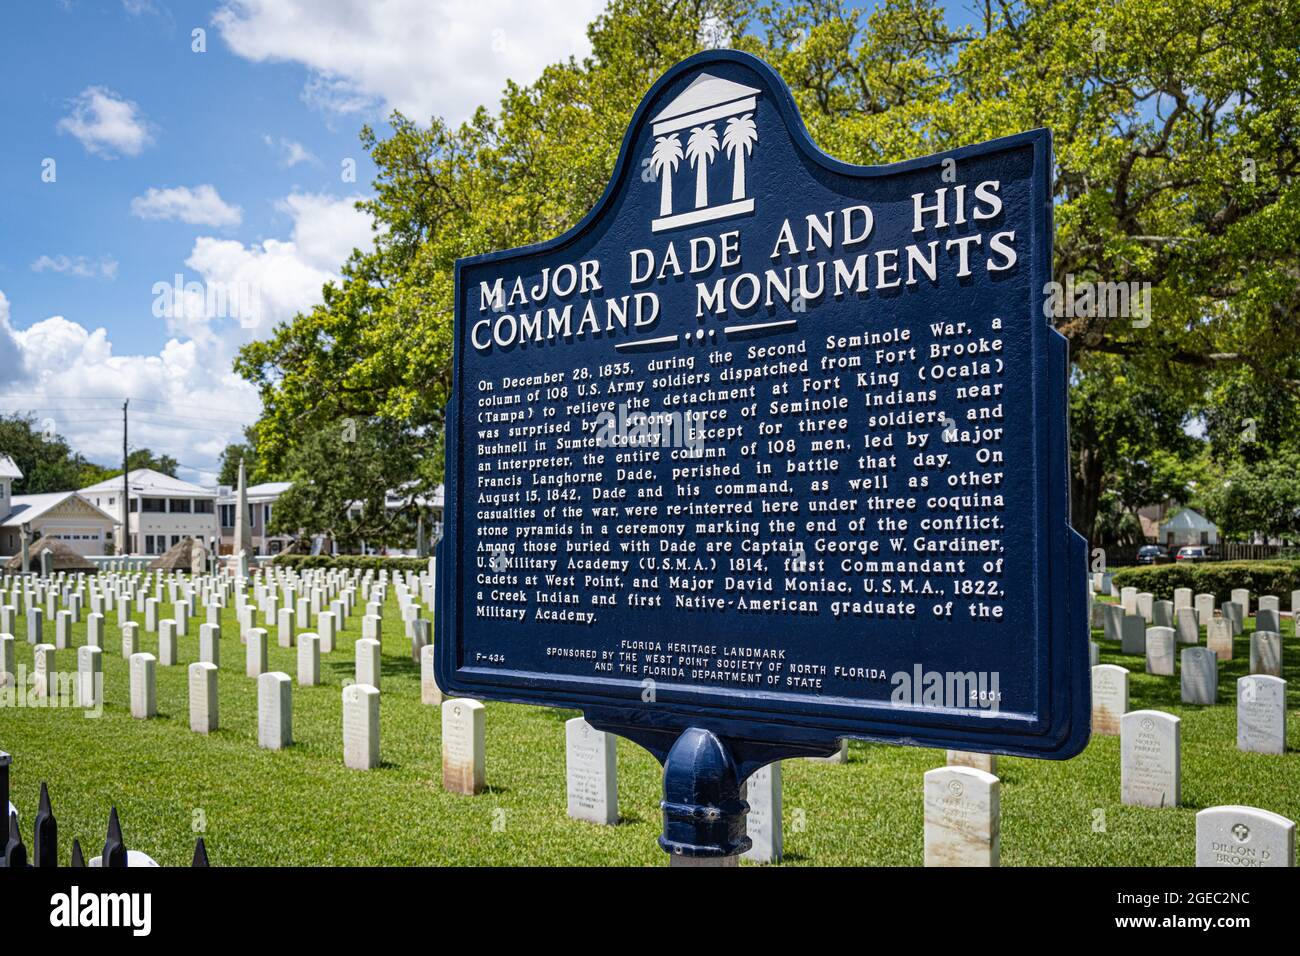 Marqueur historique du major Dade et de ses monuments de commandement au cimetière national de St. Augustine, à St. Augustine, Floride. (ÉTATS-UNIS) Banque D'Images